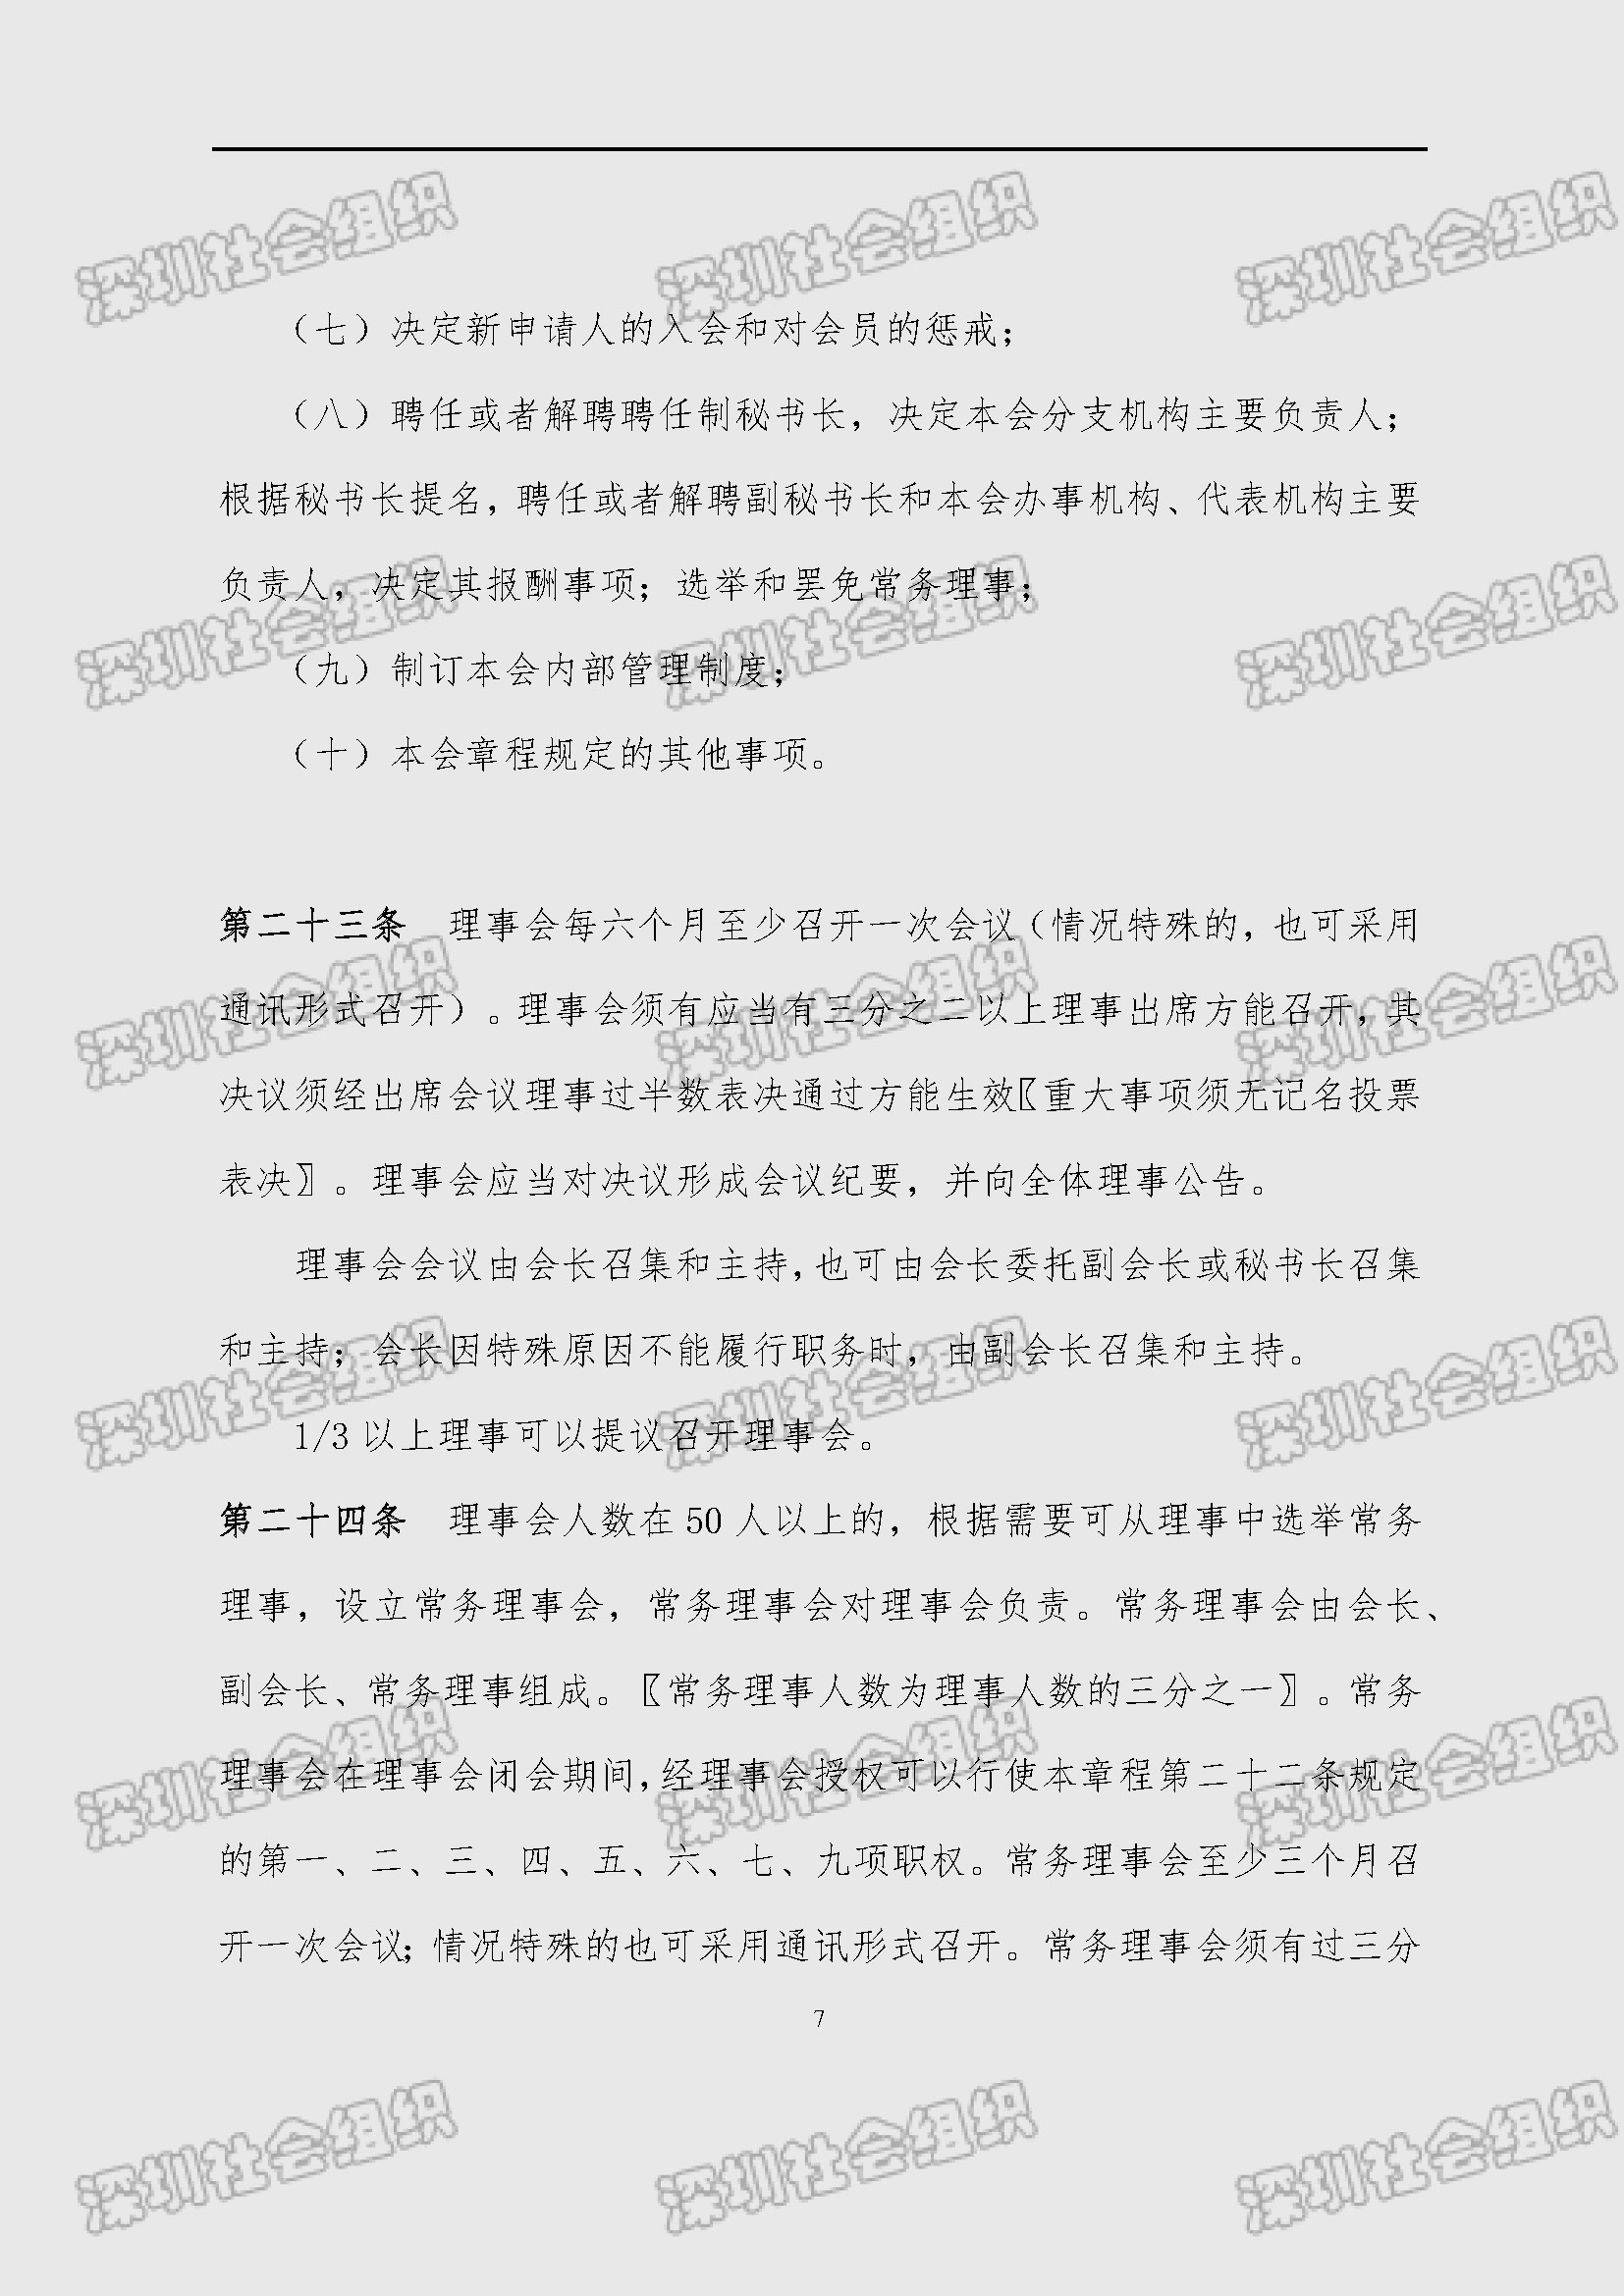 深圳市新材料行业协会章程_页面_07.jpg